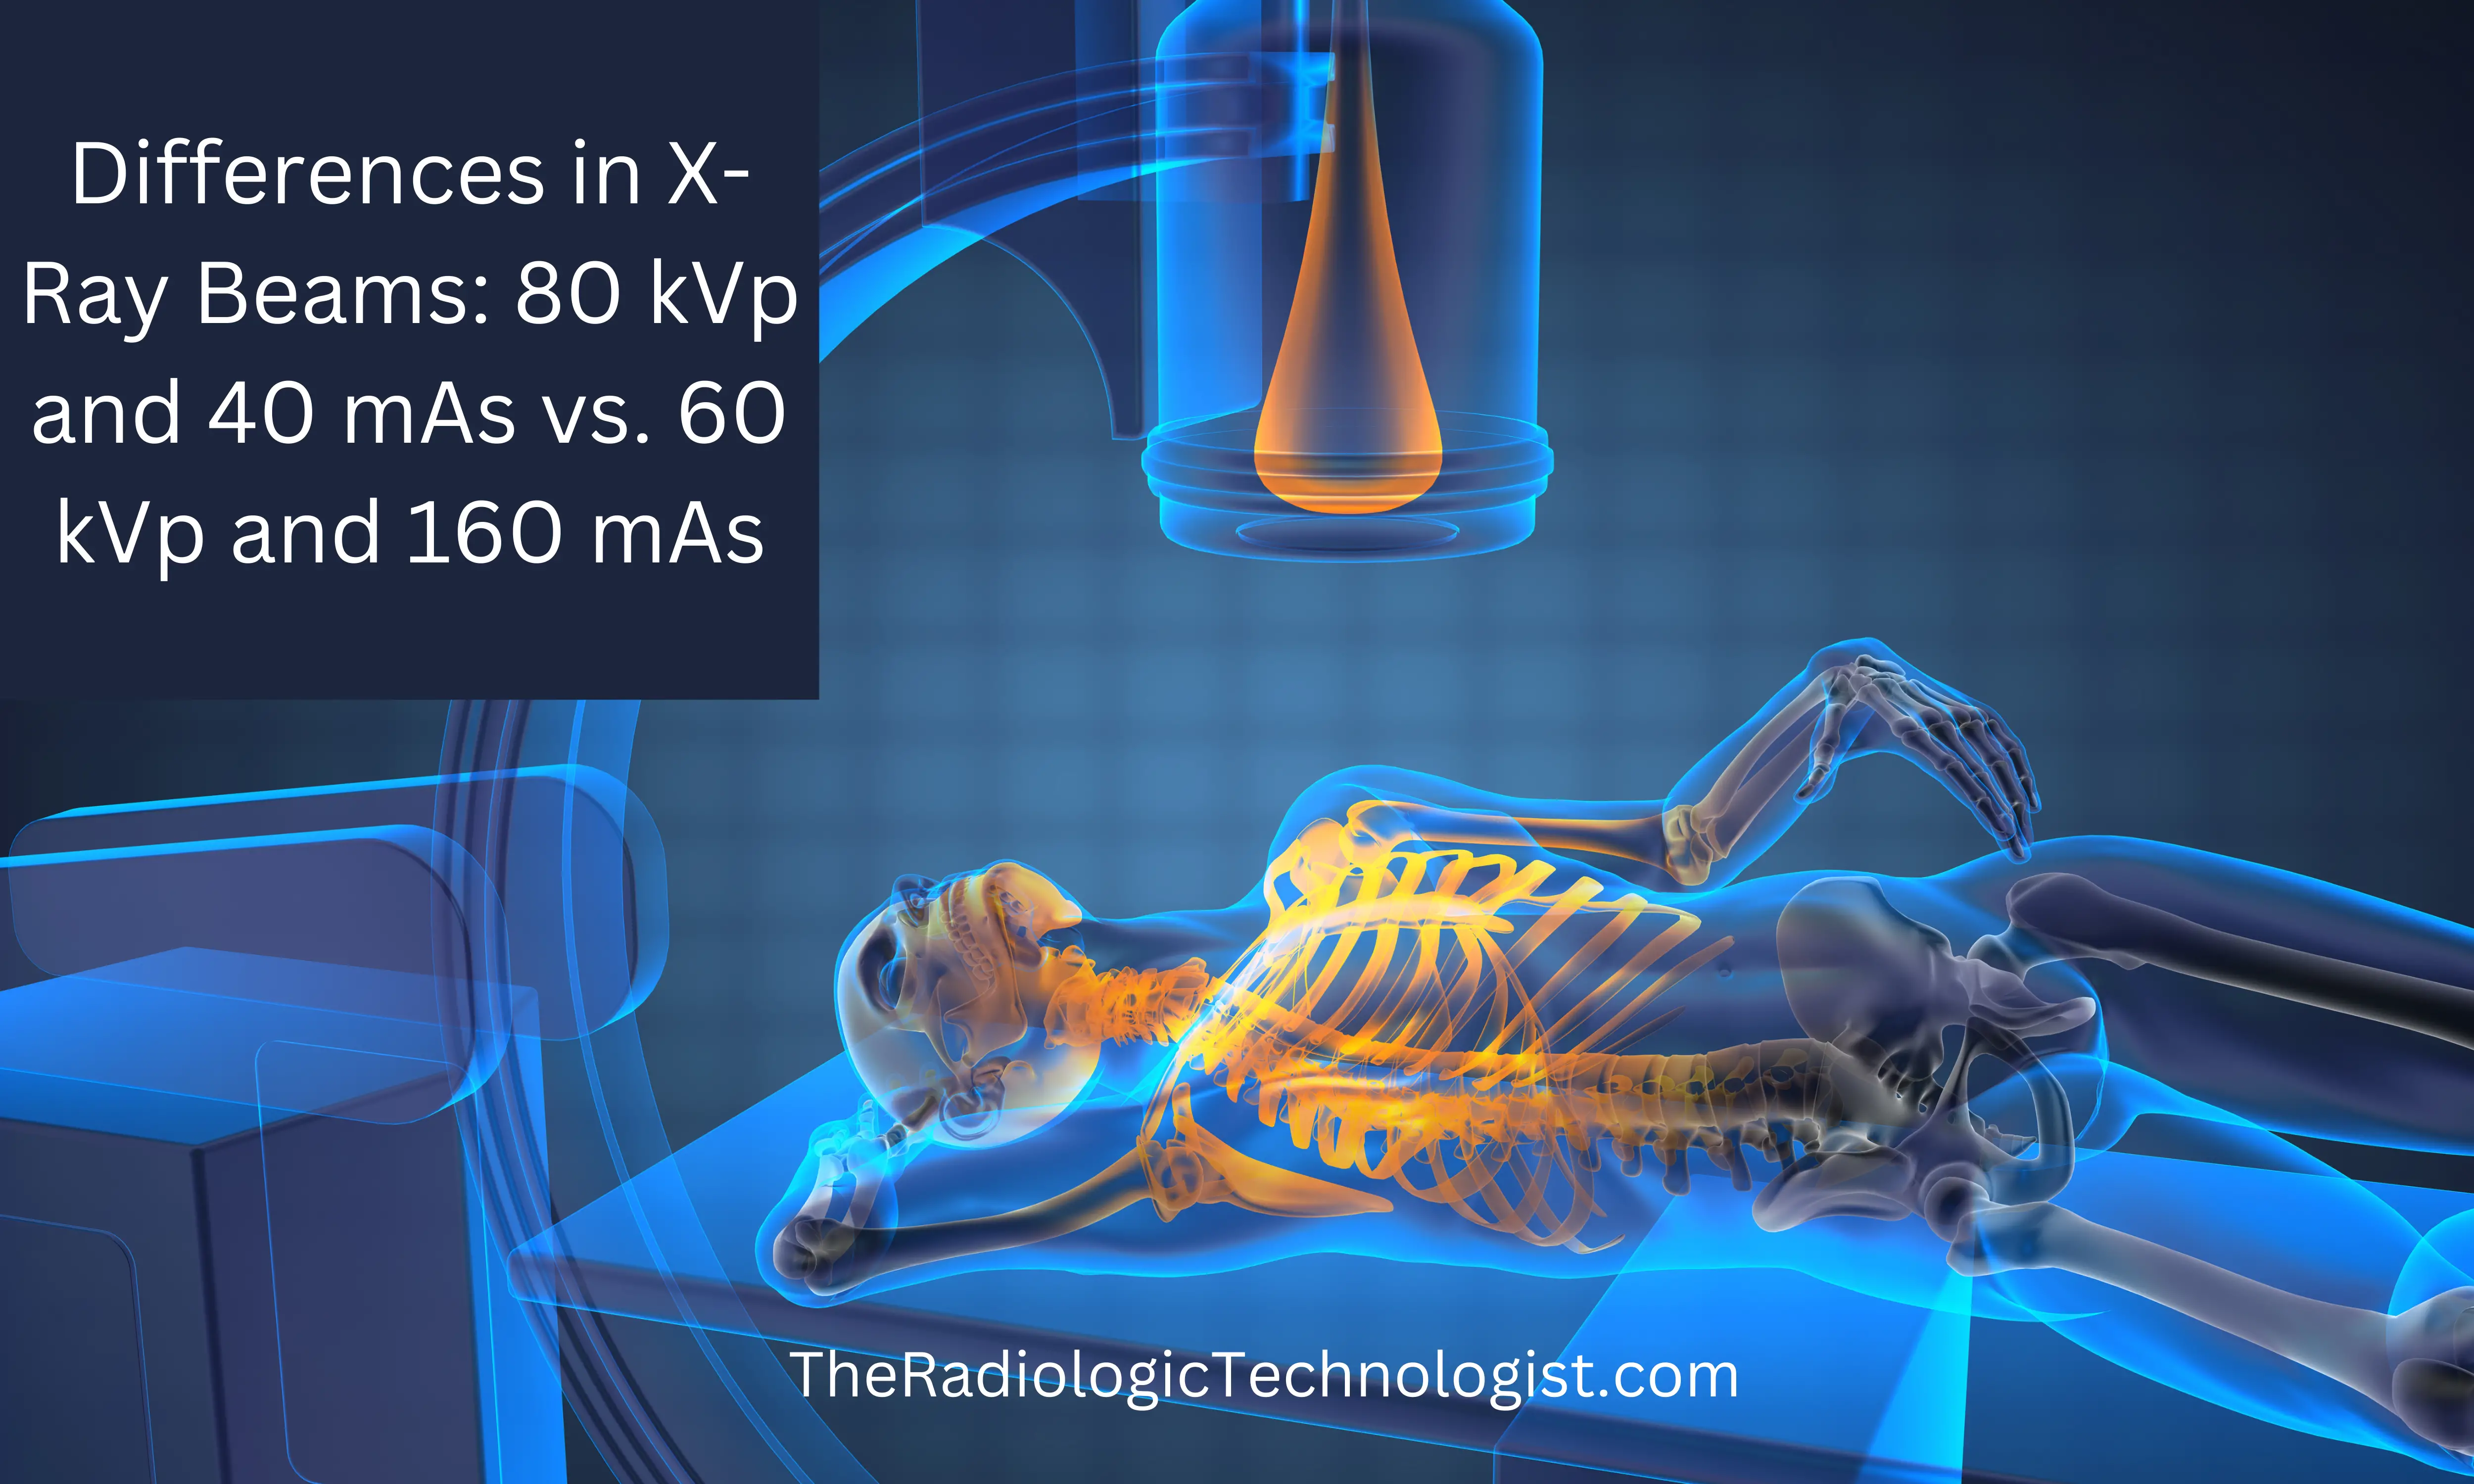 Differences in X-Ray Beams: 80 kVp and 40 mAs vs. 60 kVp and 160 mAs